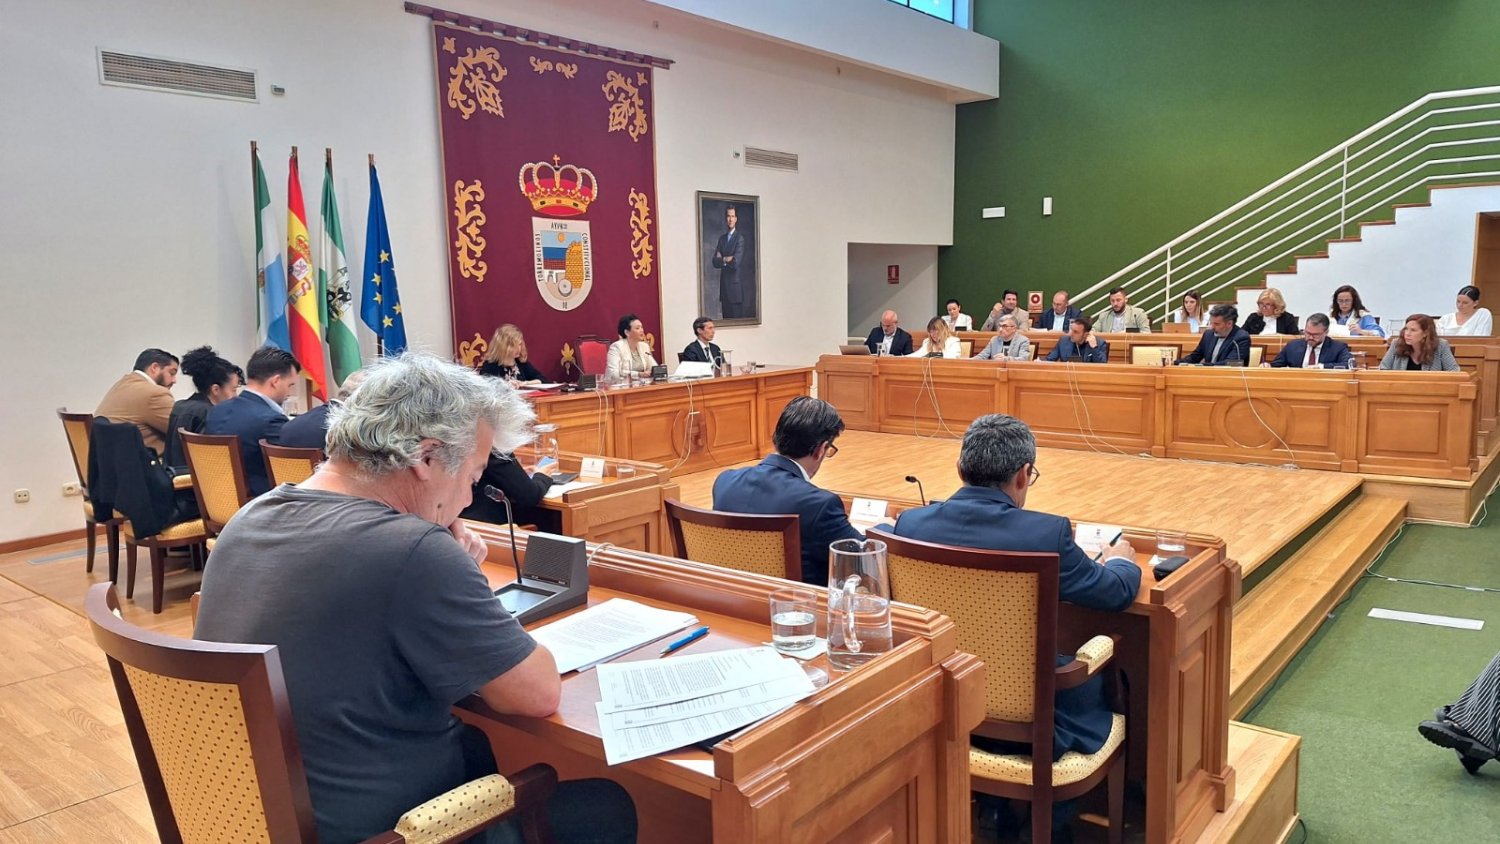 El pleno de Torremolinos aprueba inicialmente la Ordenanza Municipal Reguladora de la Zona de Bajas Emisiones